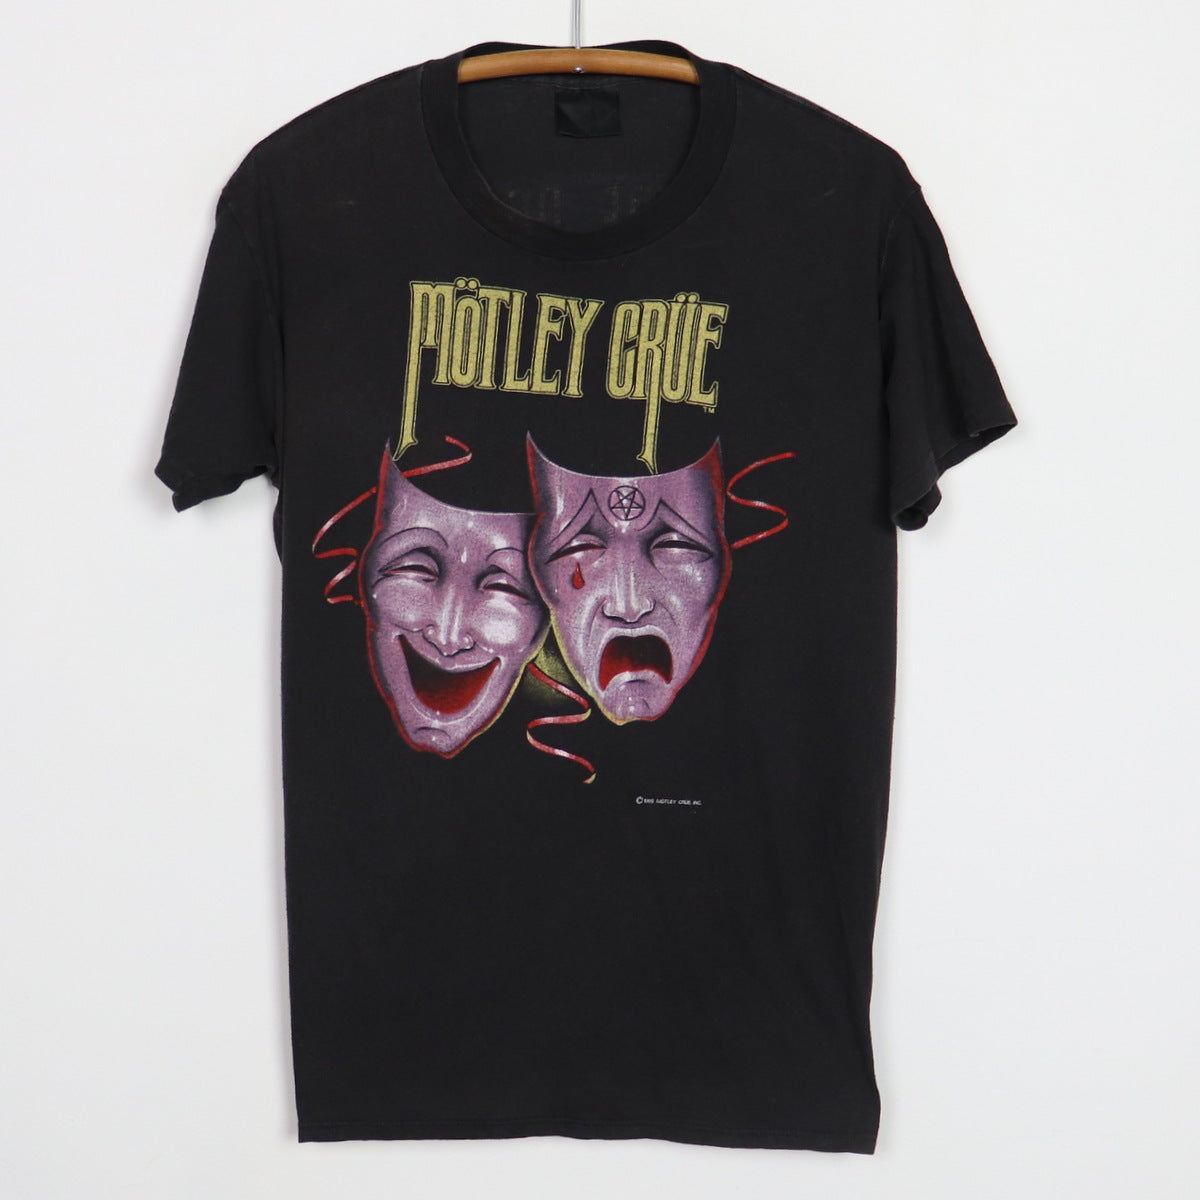 1985 Motley Crue Theatre Of Pain Shirt